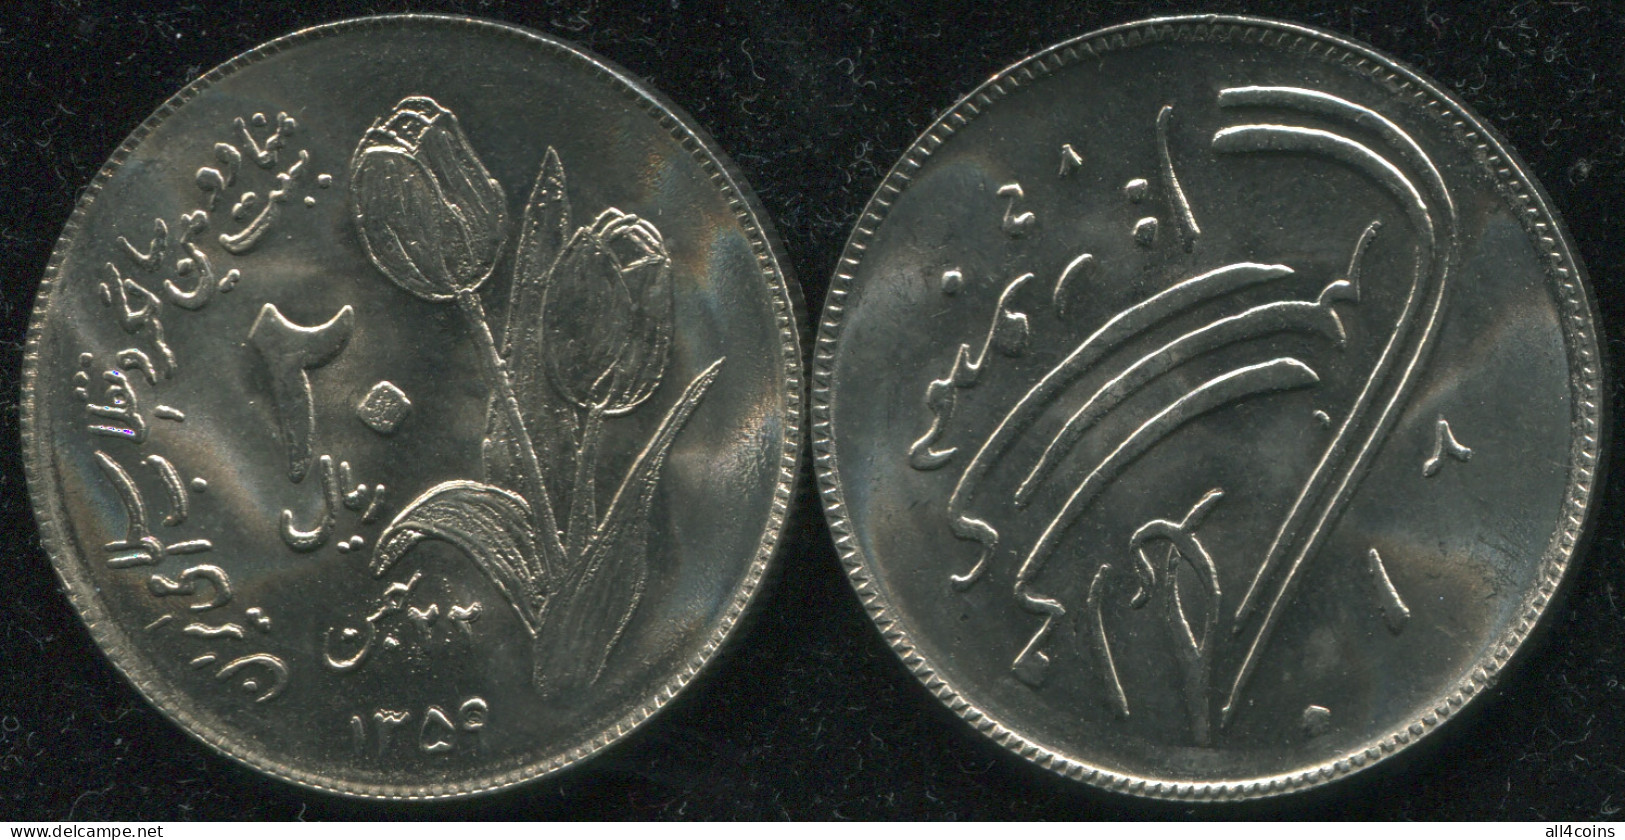 Persia. 20 Rials. 1980 (Coin KM#1246. Unc) 2nd Anniversary Of Islamic Revolution - Iran